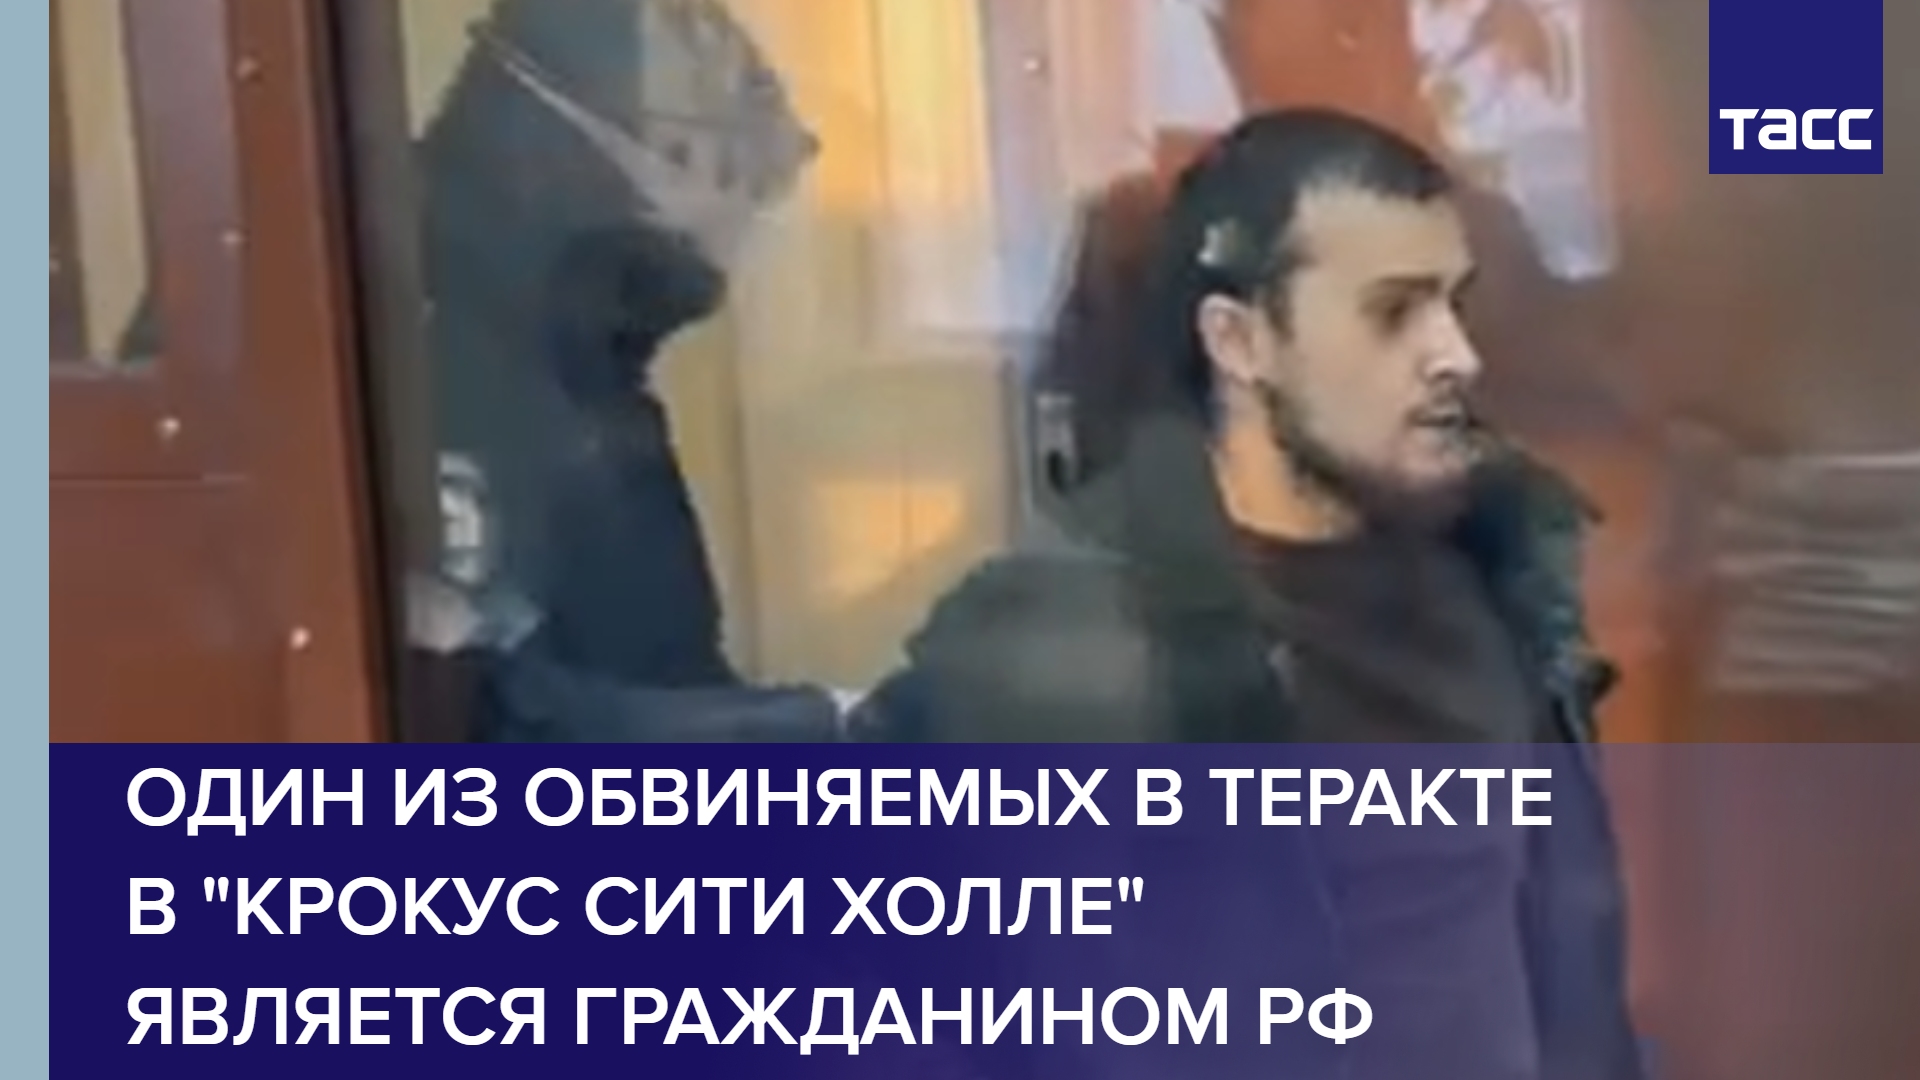 Один из обвиняемых в теракте в "Крокус сити холле" является гражданином РФ